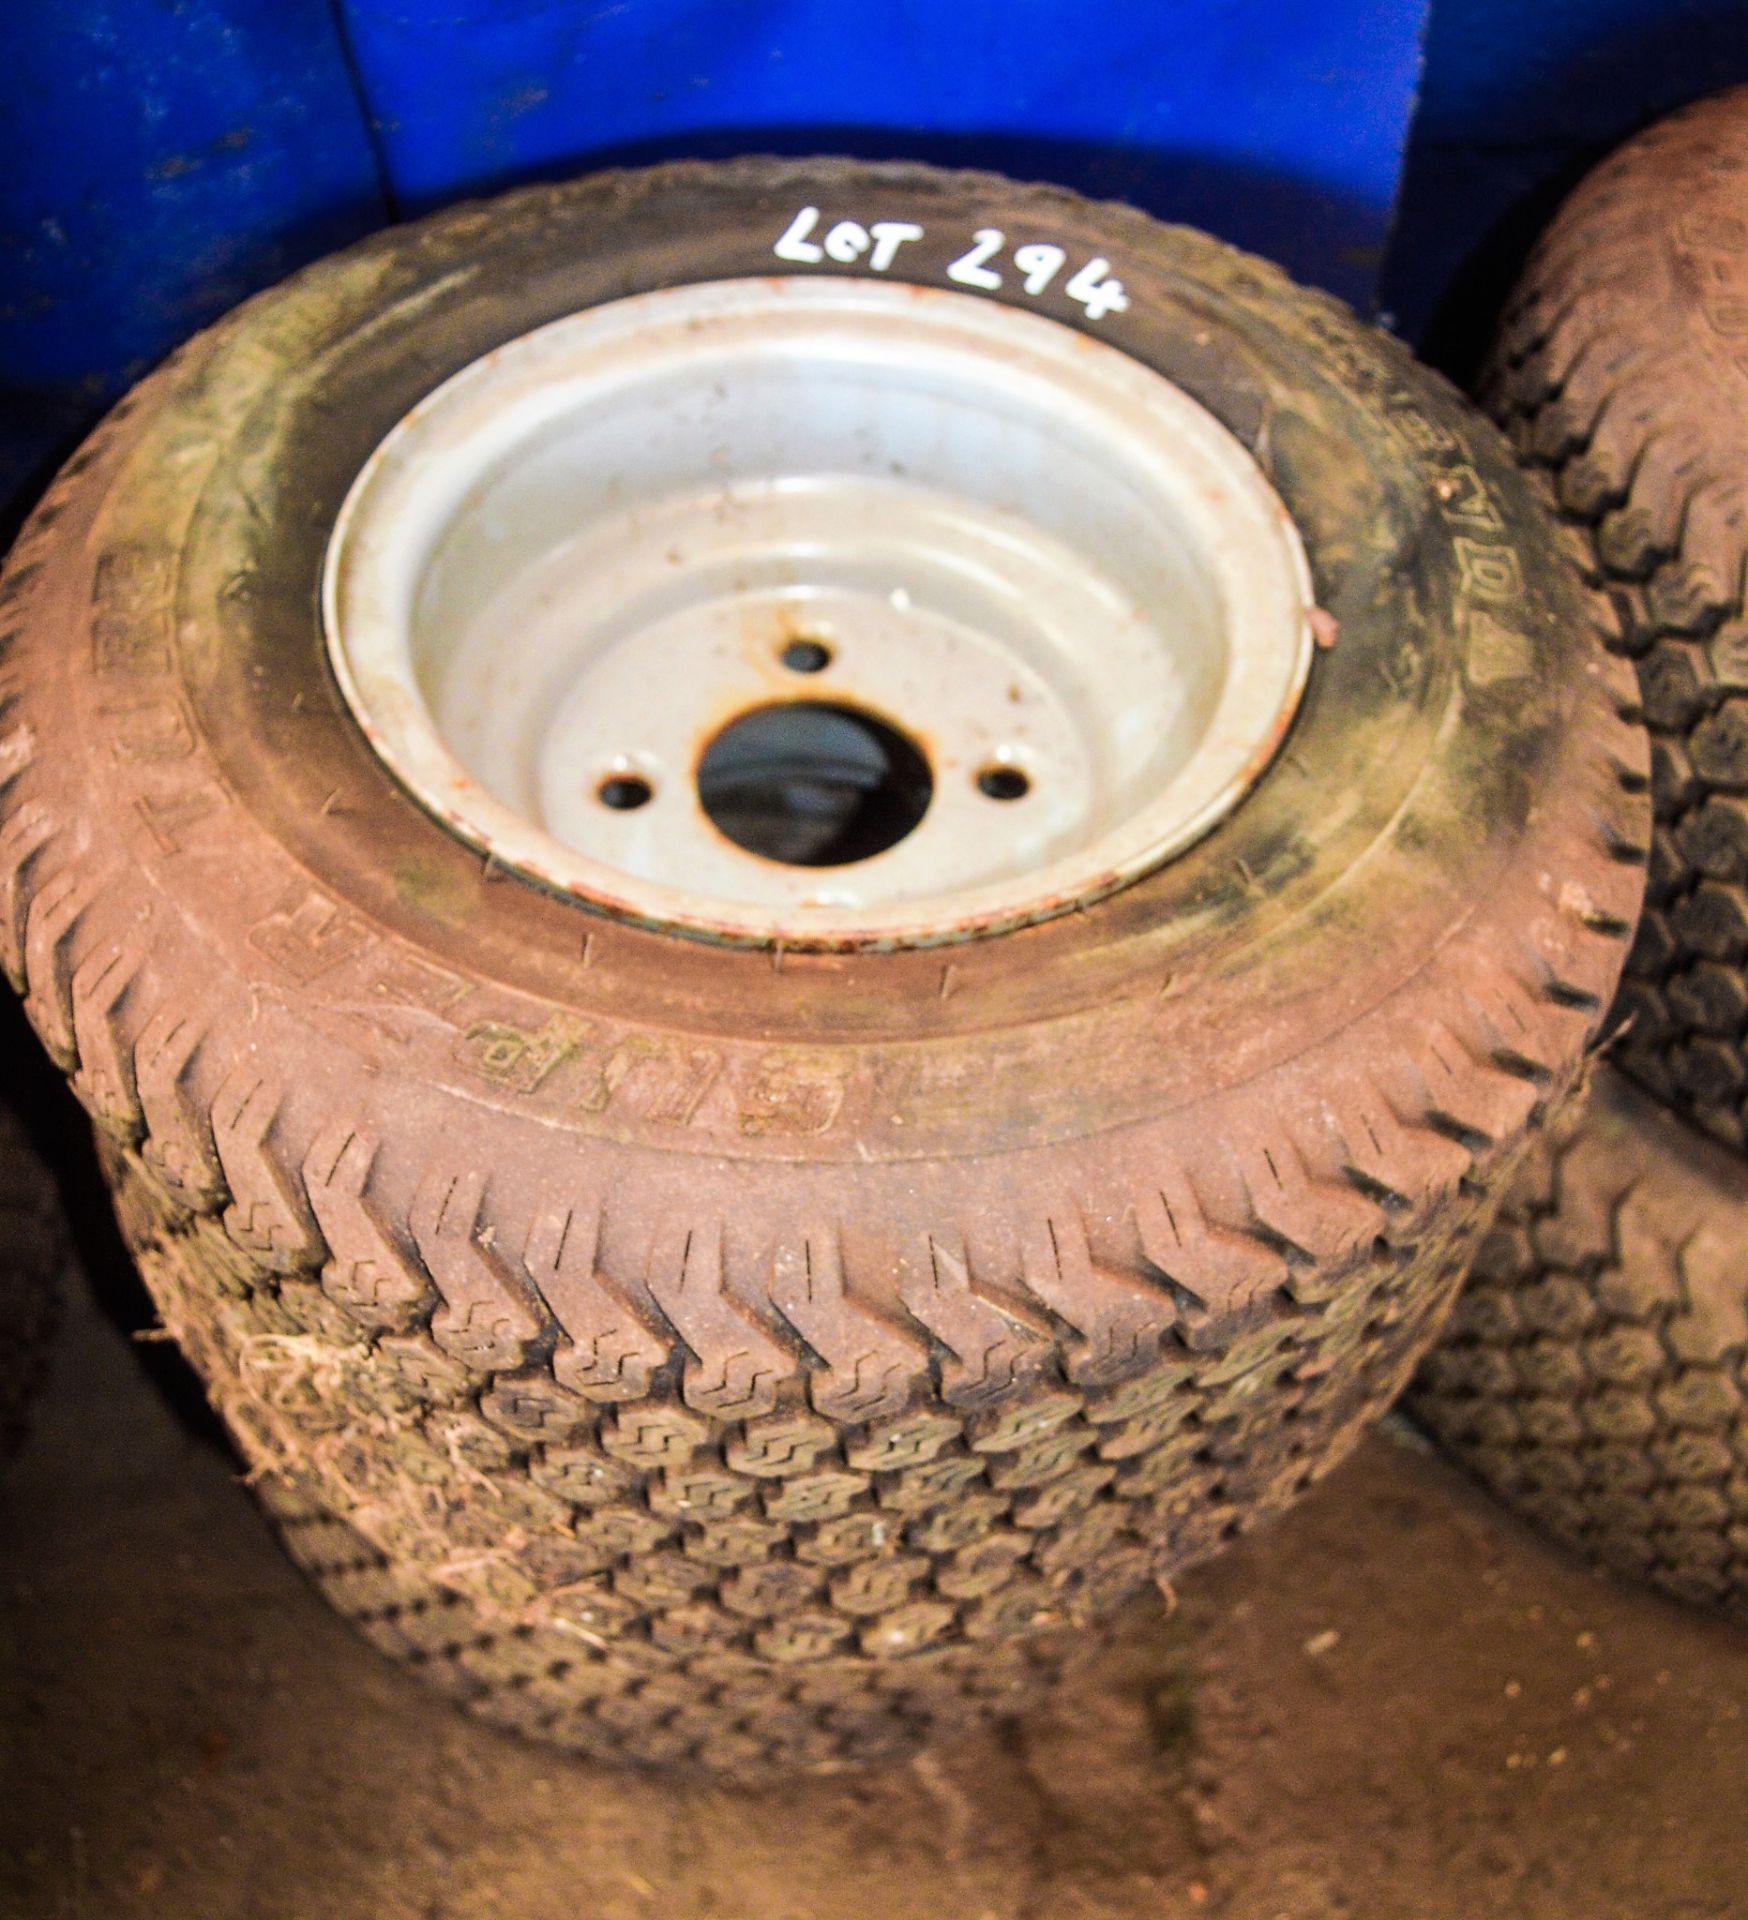 Pair of Kenda Super Turf 18 x 8.50 -8 turf tyres c/w steel rims